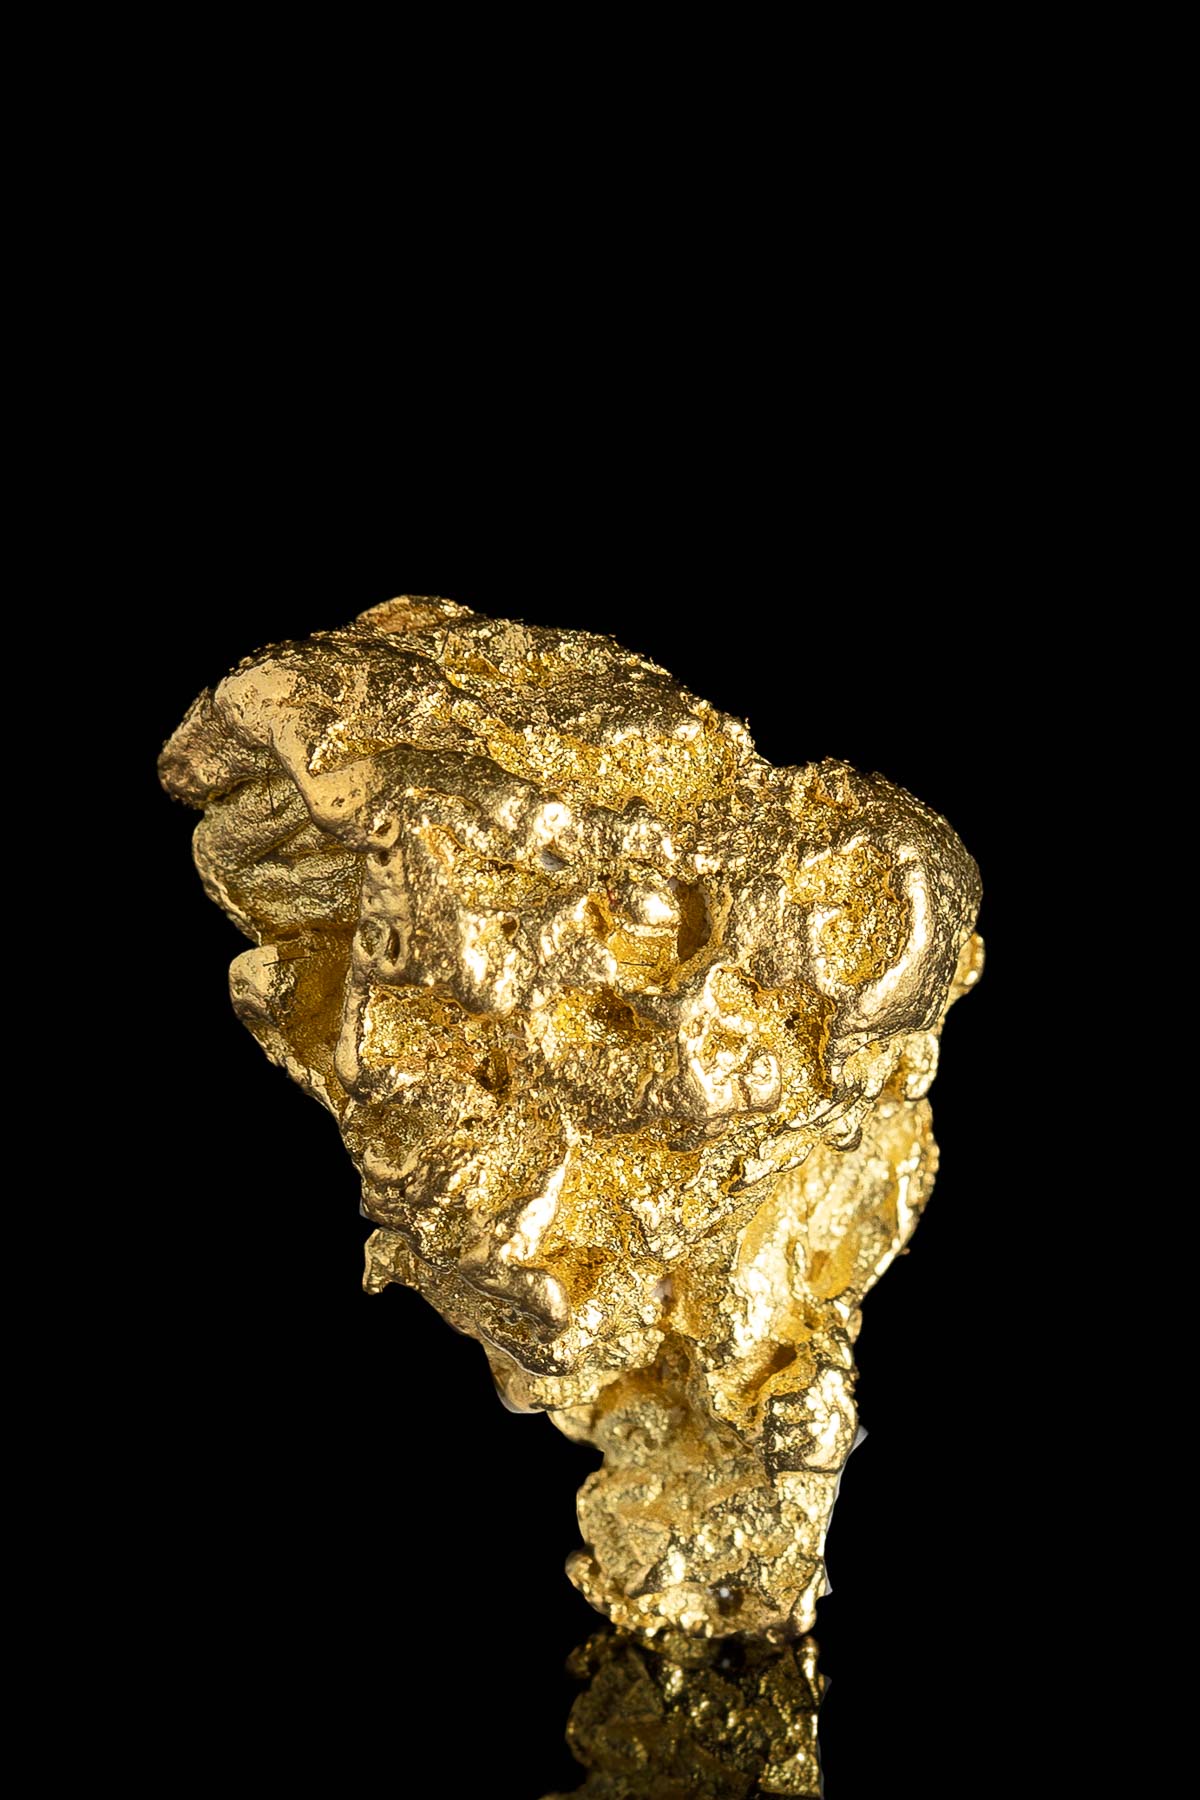 Rugged Yukon Natural Gold Nugget - 4.8 grams